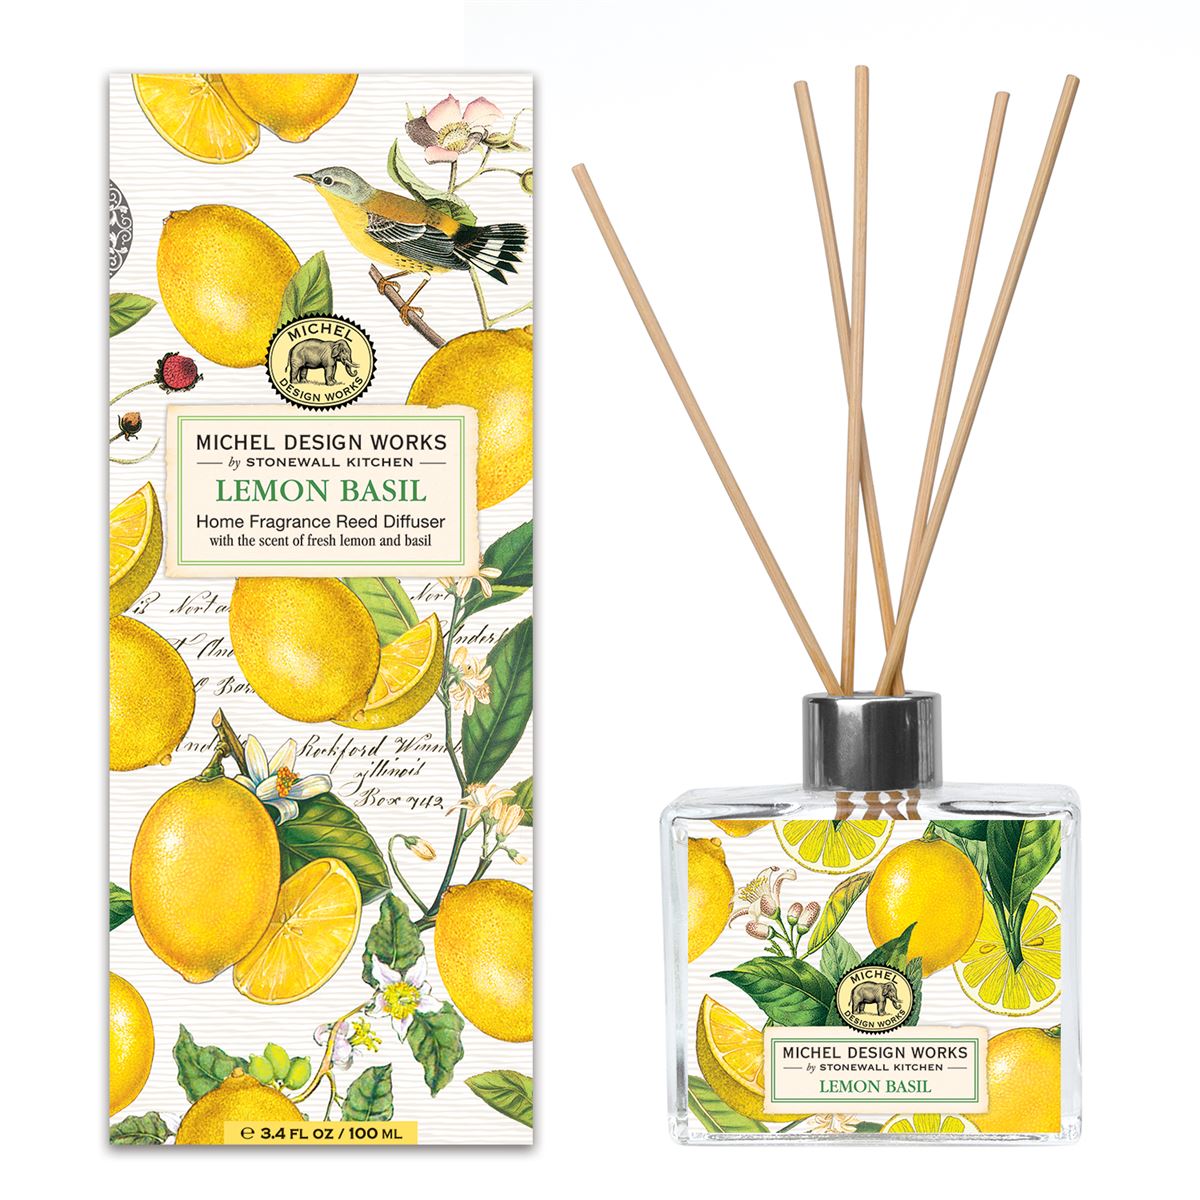 Michel Design Works - Lemon Basil Home Fragrance Reed Diffuser